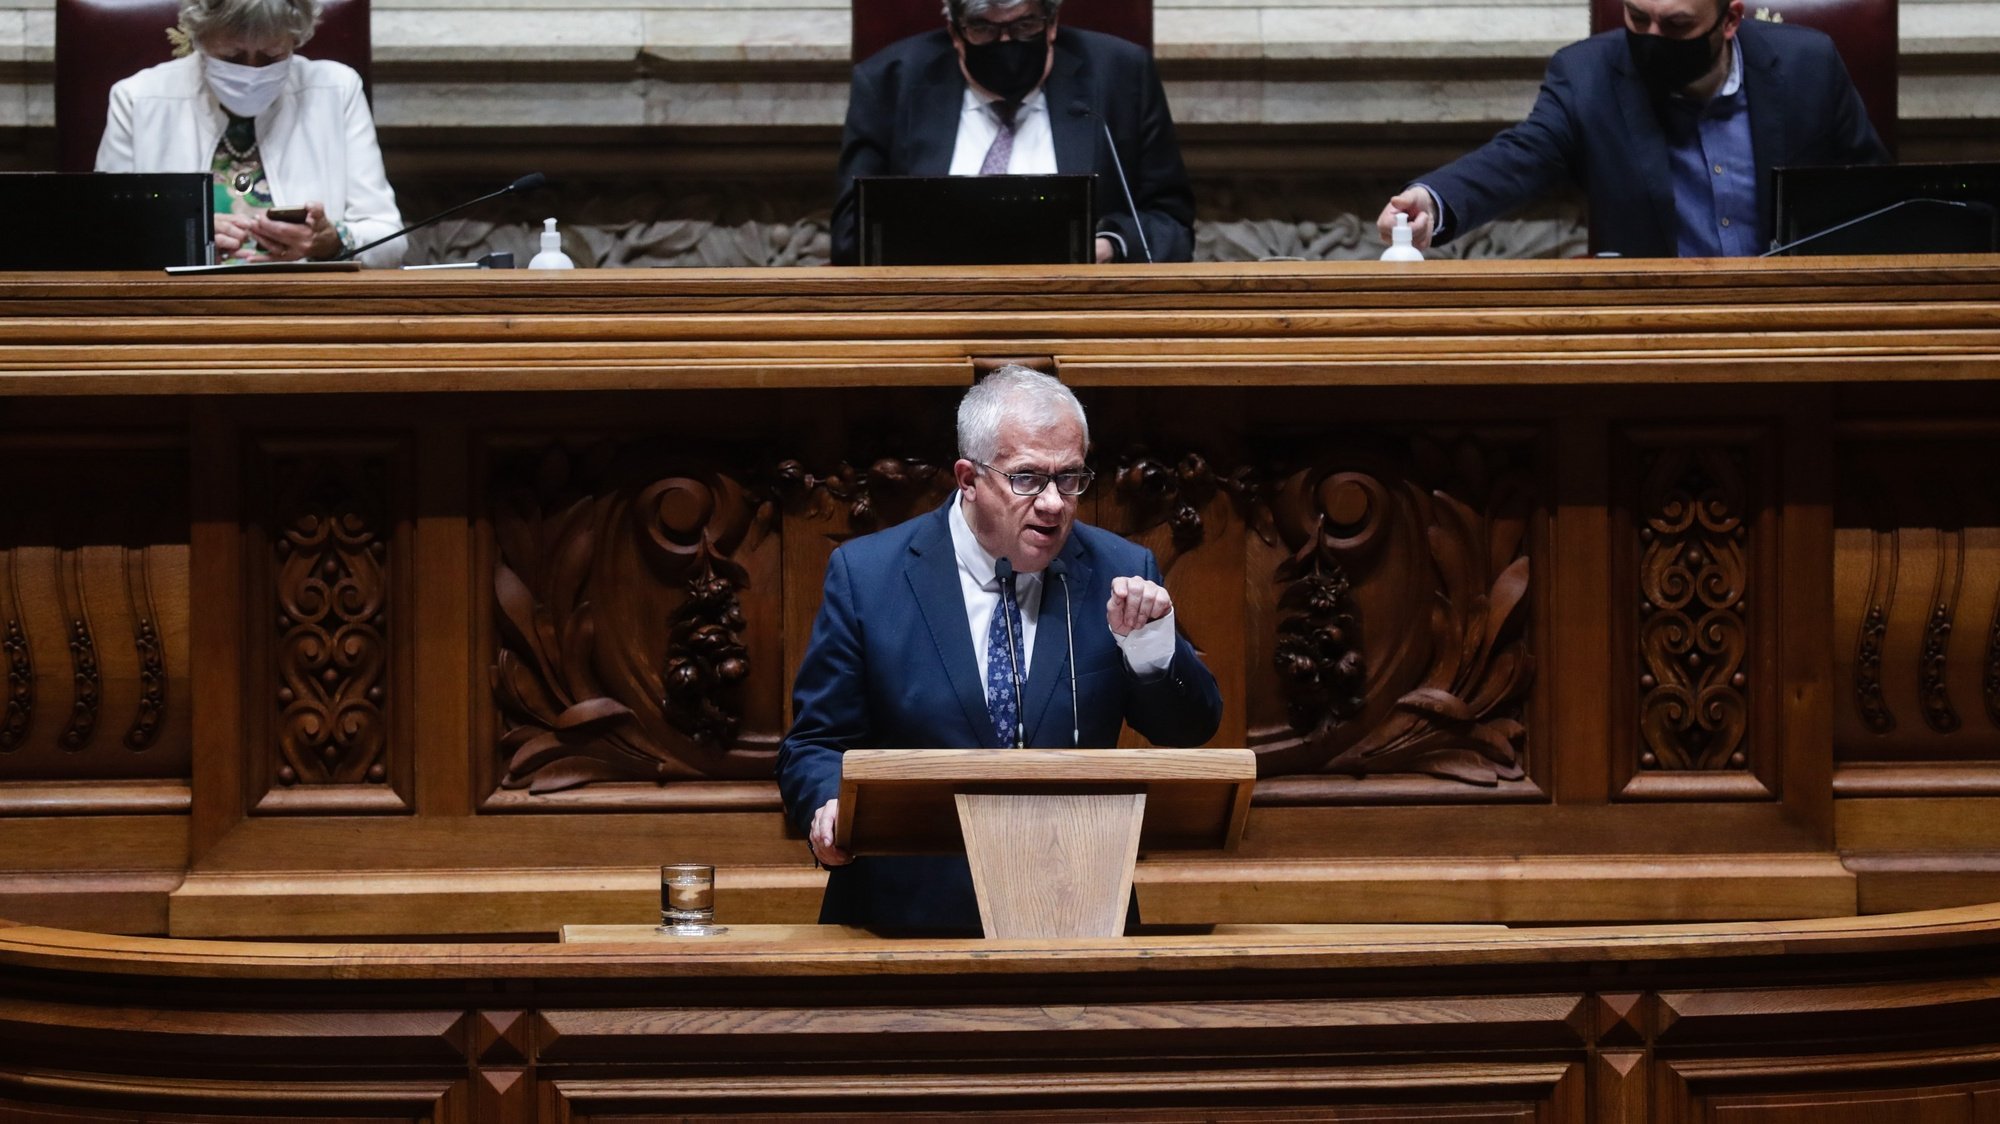 O ministro da Administração Interna, Eduardo Cabrita, intervém durante o debate sobre o pedido de autorização de renovação do Estado de Emergência, na Assembleia da República, em Lisboa, 14 de abril de 2021. TIAGO PETINGA/LUSA